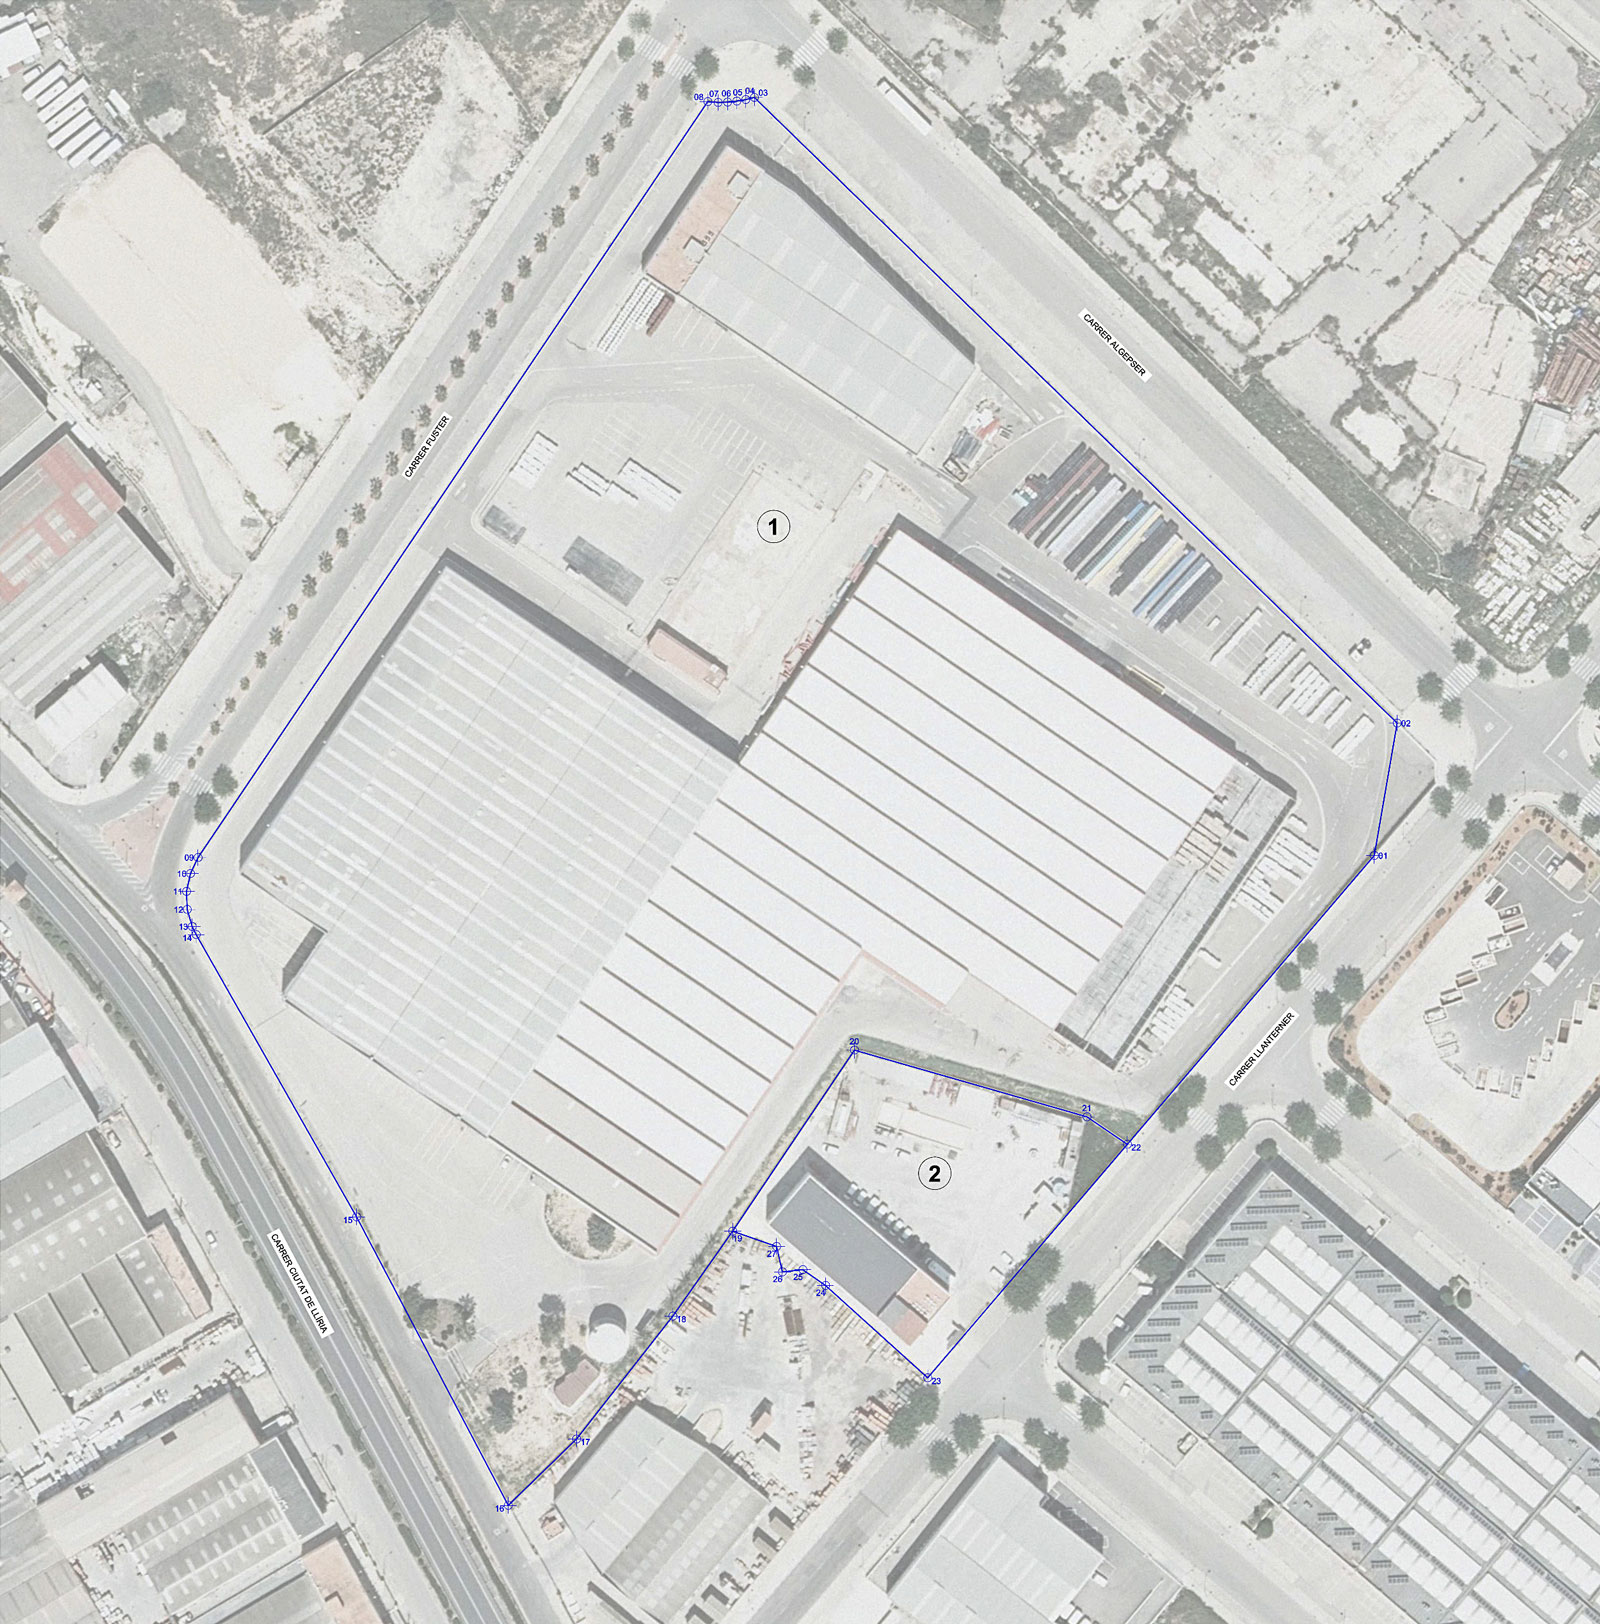 Proyecto de parcelación en suelo urbano industrial (Paterna)